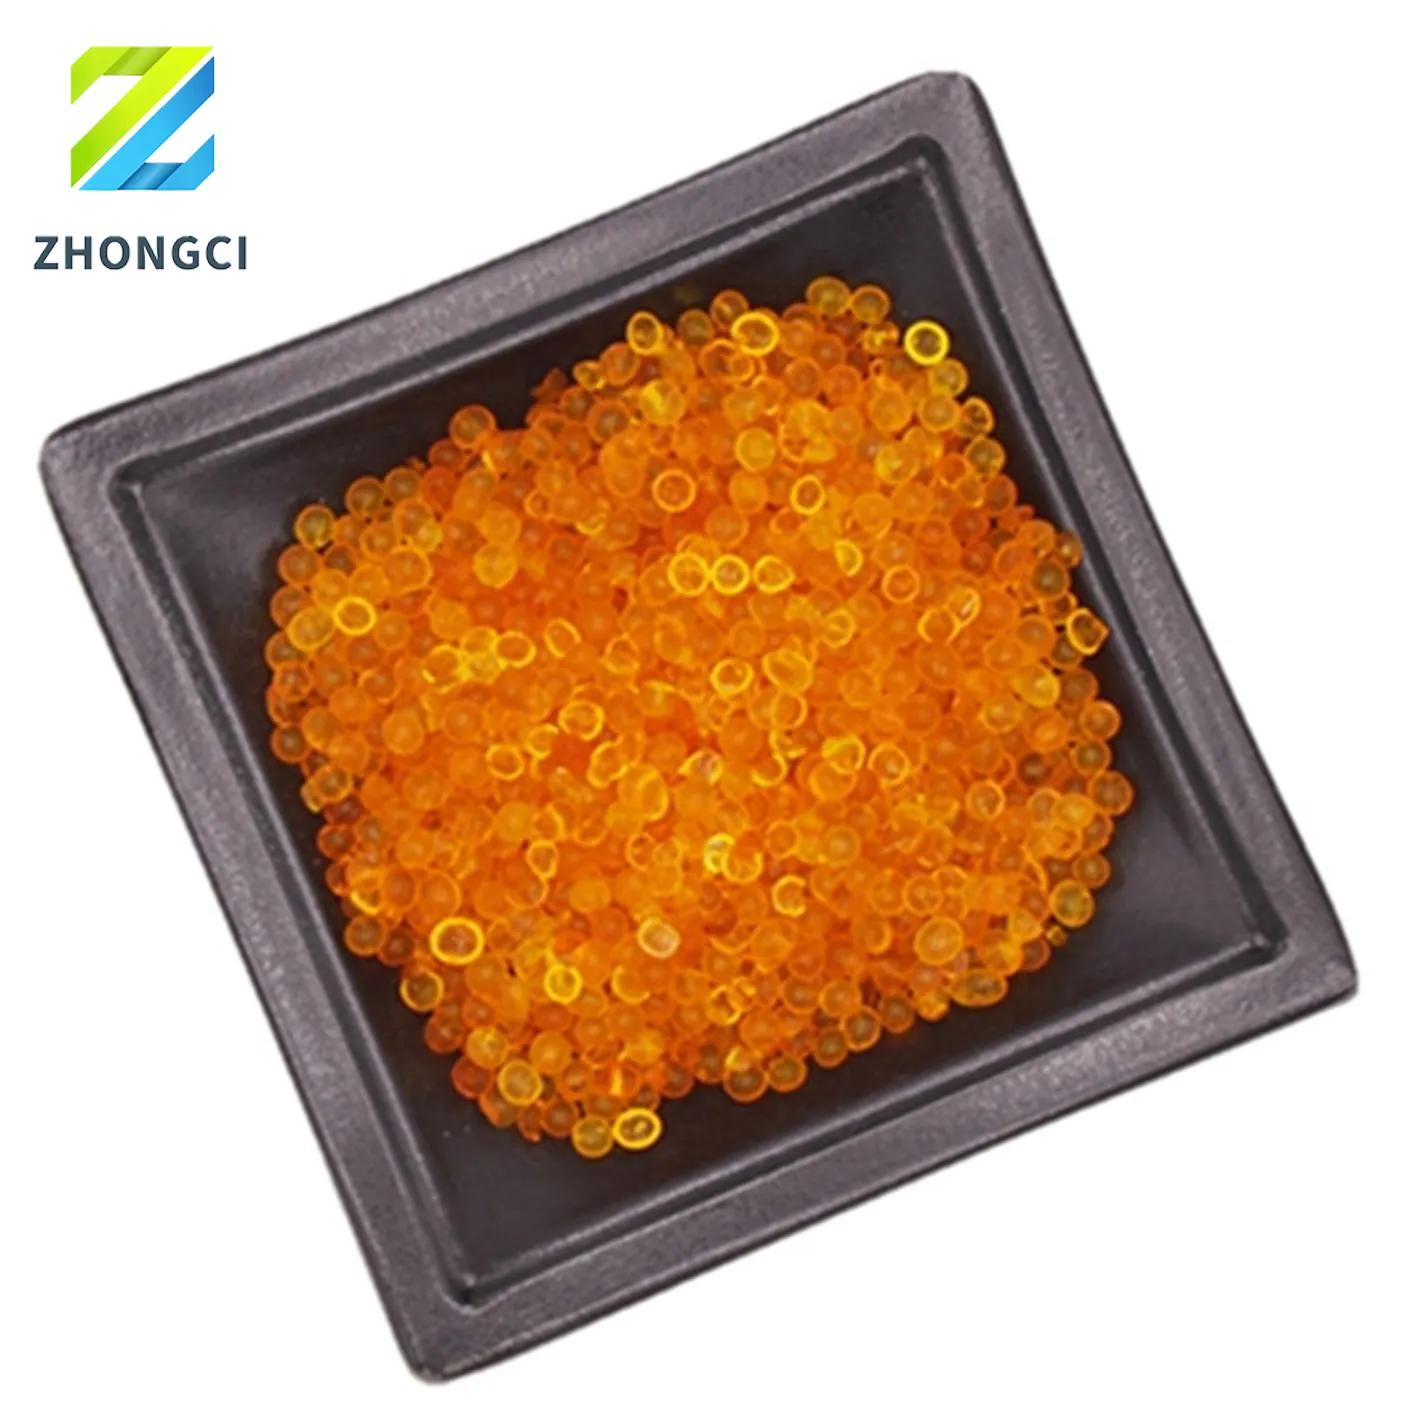 Gel de sílice Zhongci tipo A Indicador de color naranja desecante 2-5mm absorción de humedad industrial blanco azul naranja gel de sílice